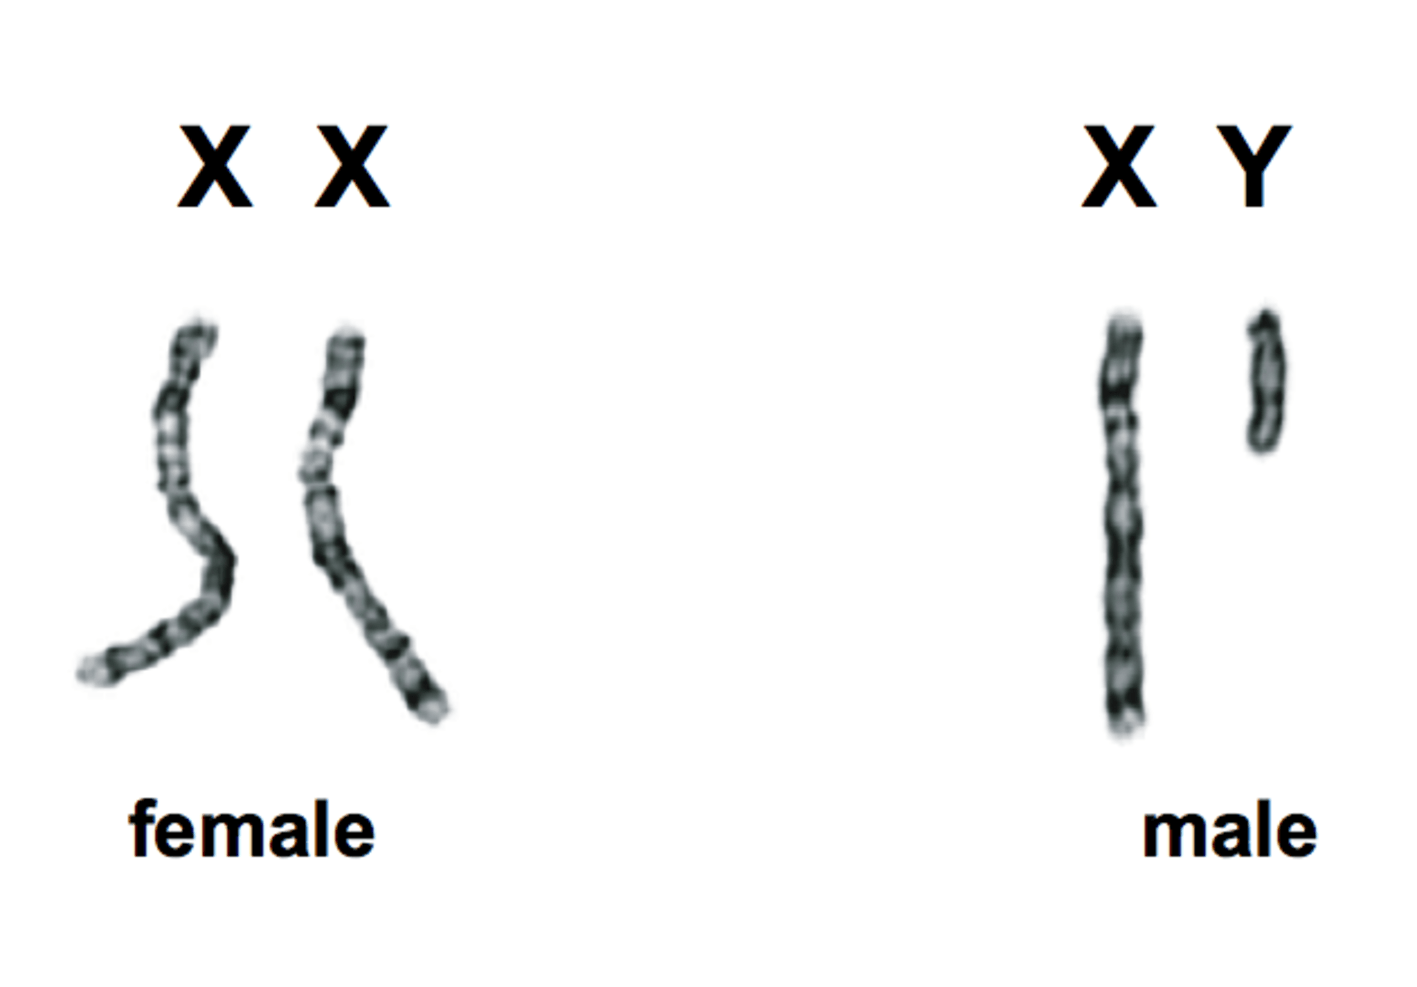 http://scitechconnect.elsevier.com/sex-genes-y-chromosome-future-of-men/